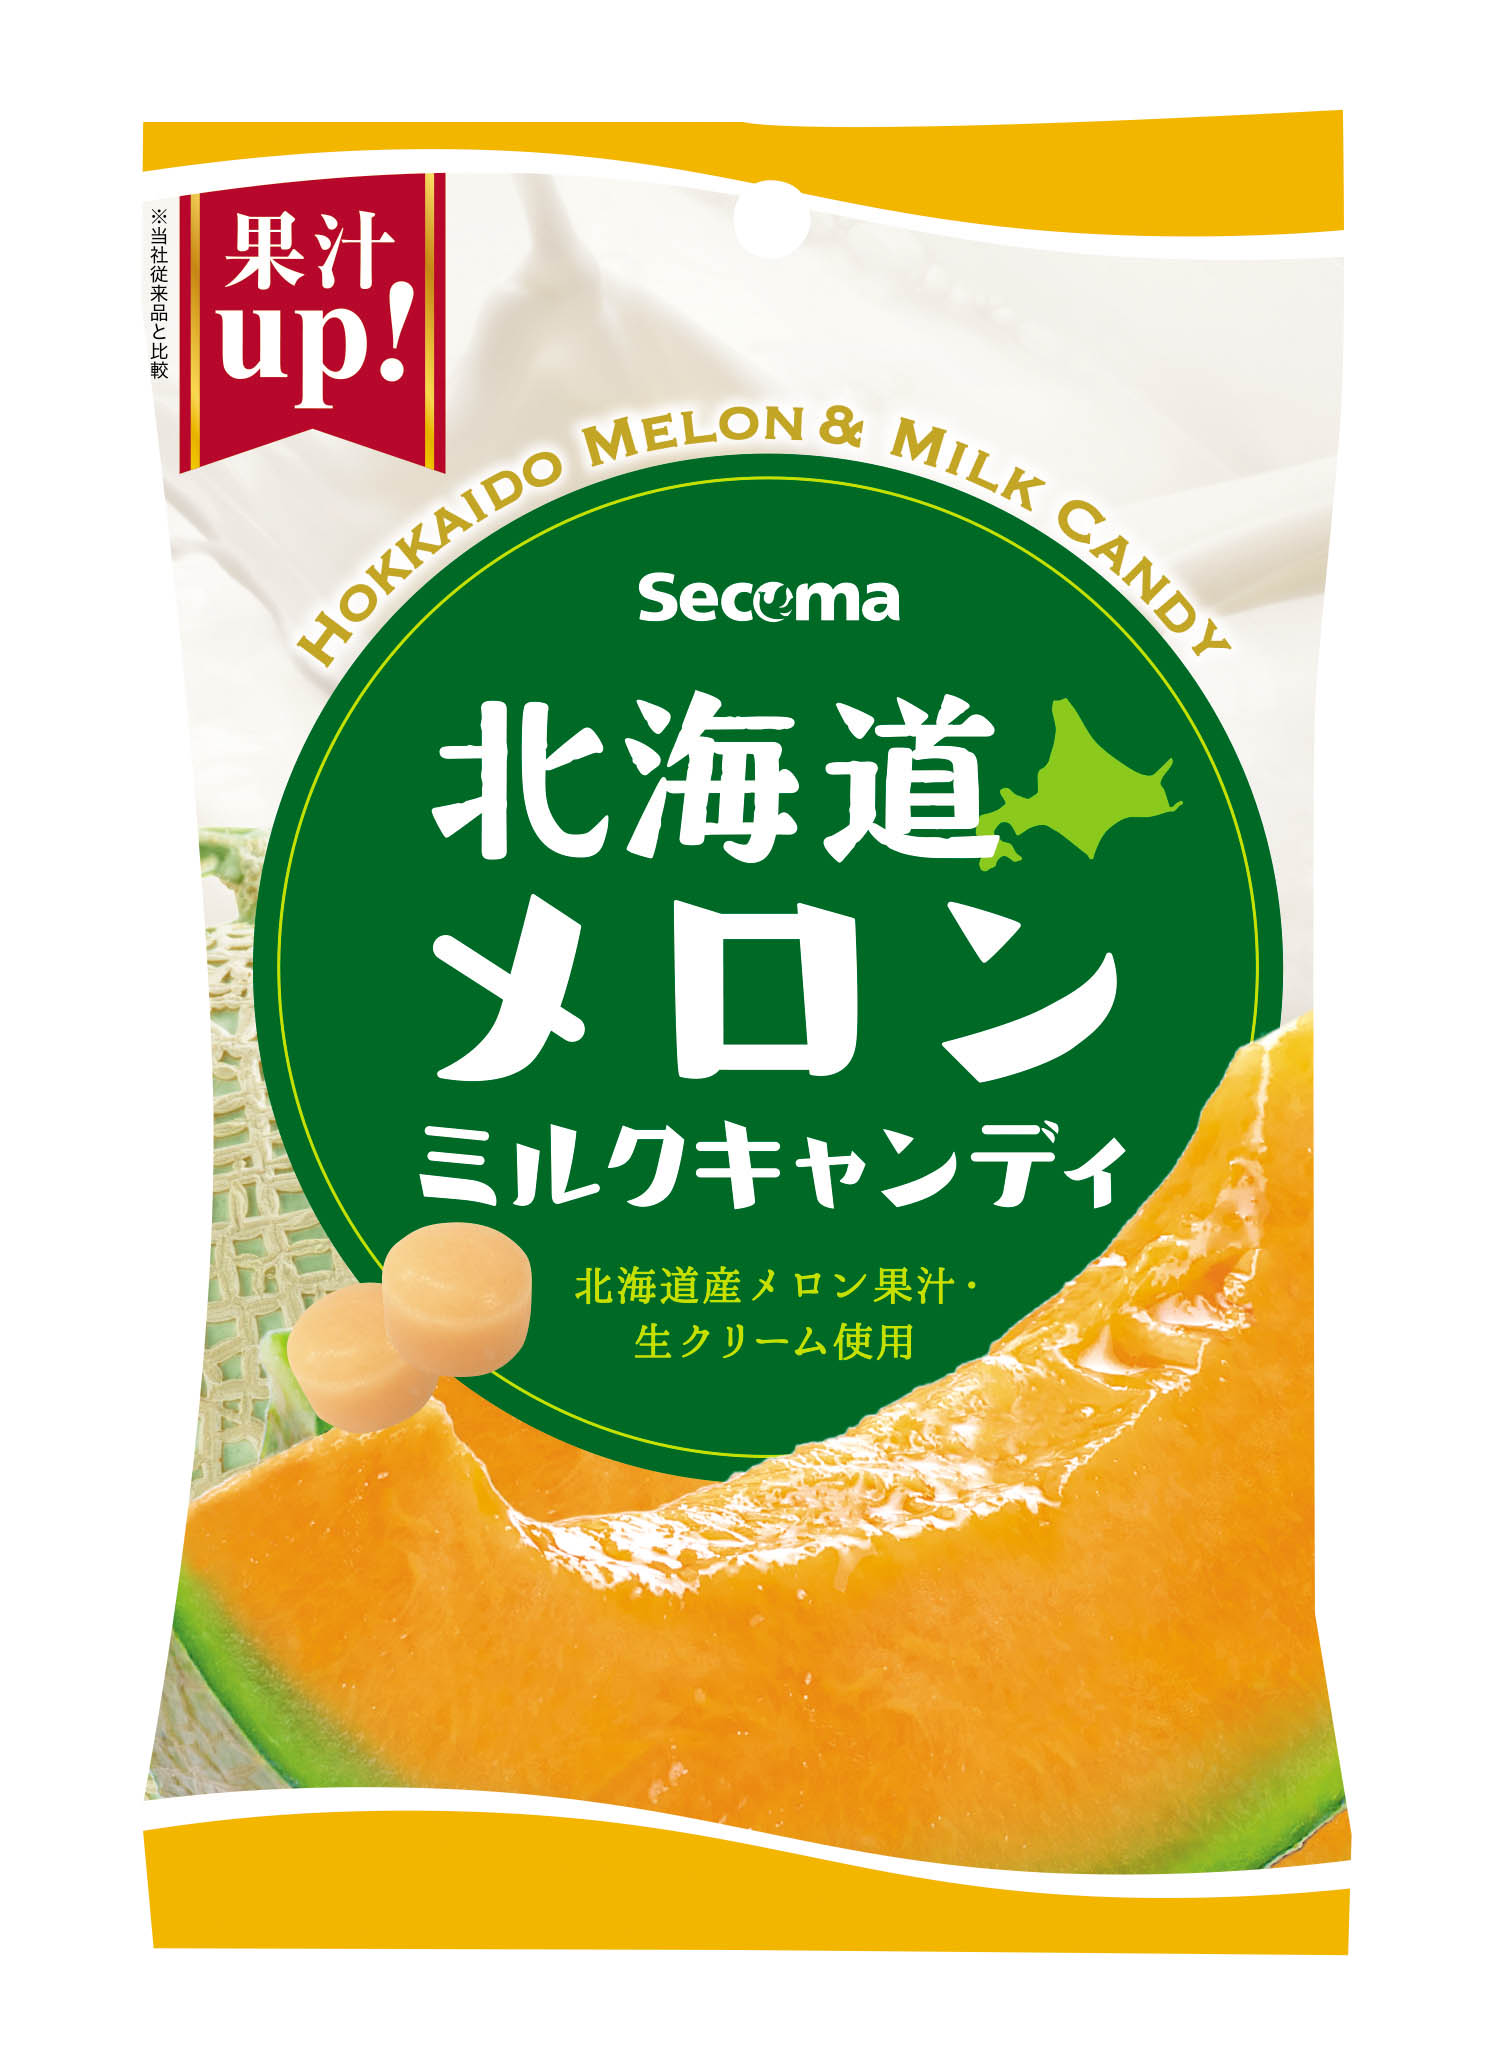 Secoma 北海道メロンミルクキャンディ 24袋入 セイコーマートオンライン